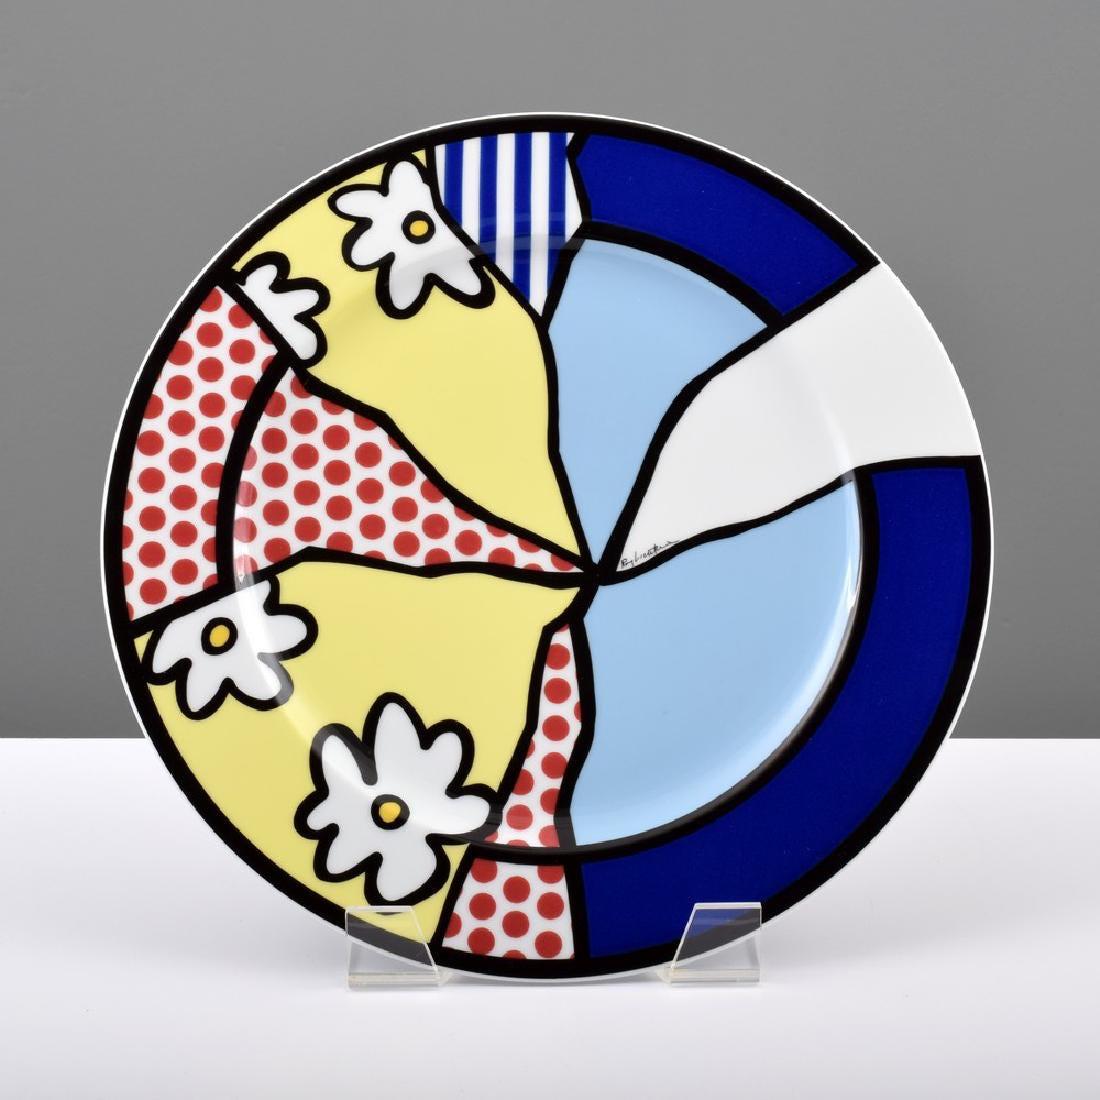 Dieser 1990 von Rosenthal, Deutschland, herausgegebene Teller aus glasiertem Porzellan ist nach einem Bild von Roy Lichtenstein gestaltet.  Die leuchtend kolorierte Platte, die von der Originalschachtel begleitet wird, ist auf der Vorderseite